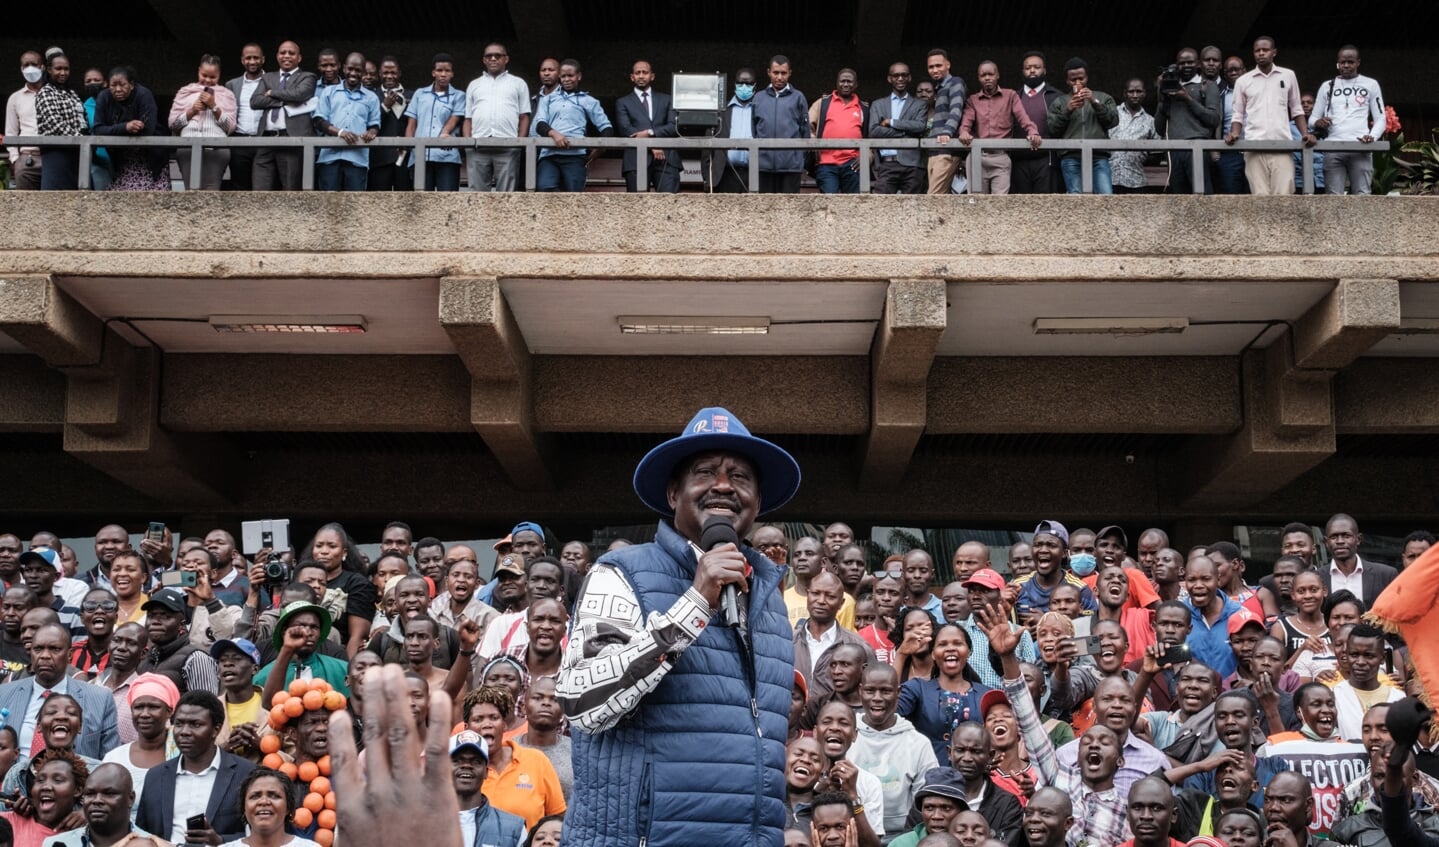 Oppositiekandidaat Raila Odinga, die in Nairobi aanhangers toespreekt, is opnieuw naar het hooggerechtshof gestapt om de uitslag van de presidentsverkiezingen aan te vechten.